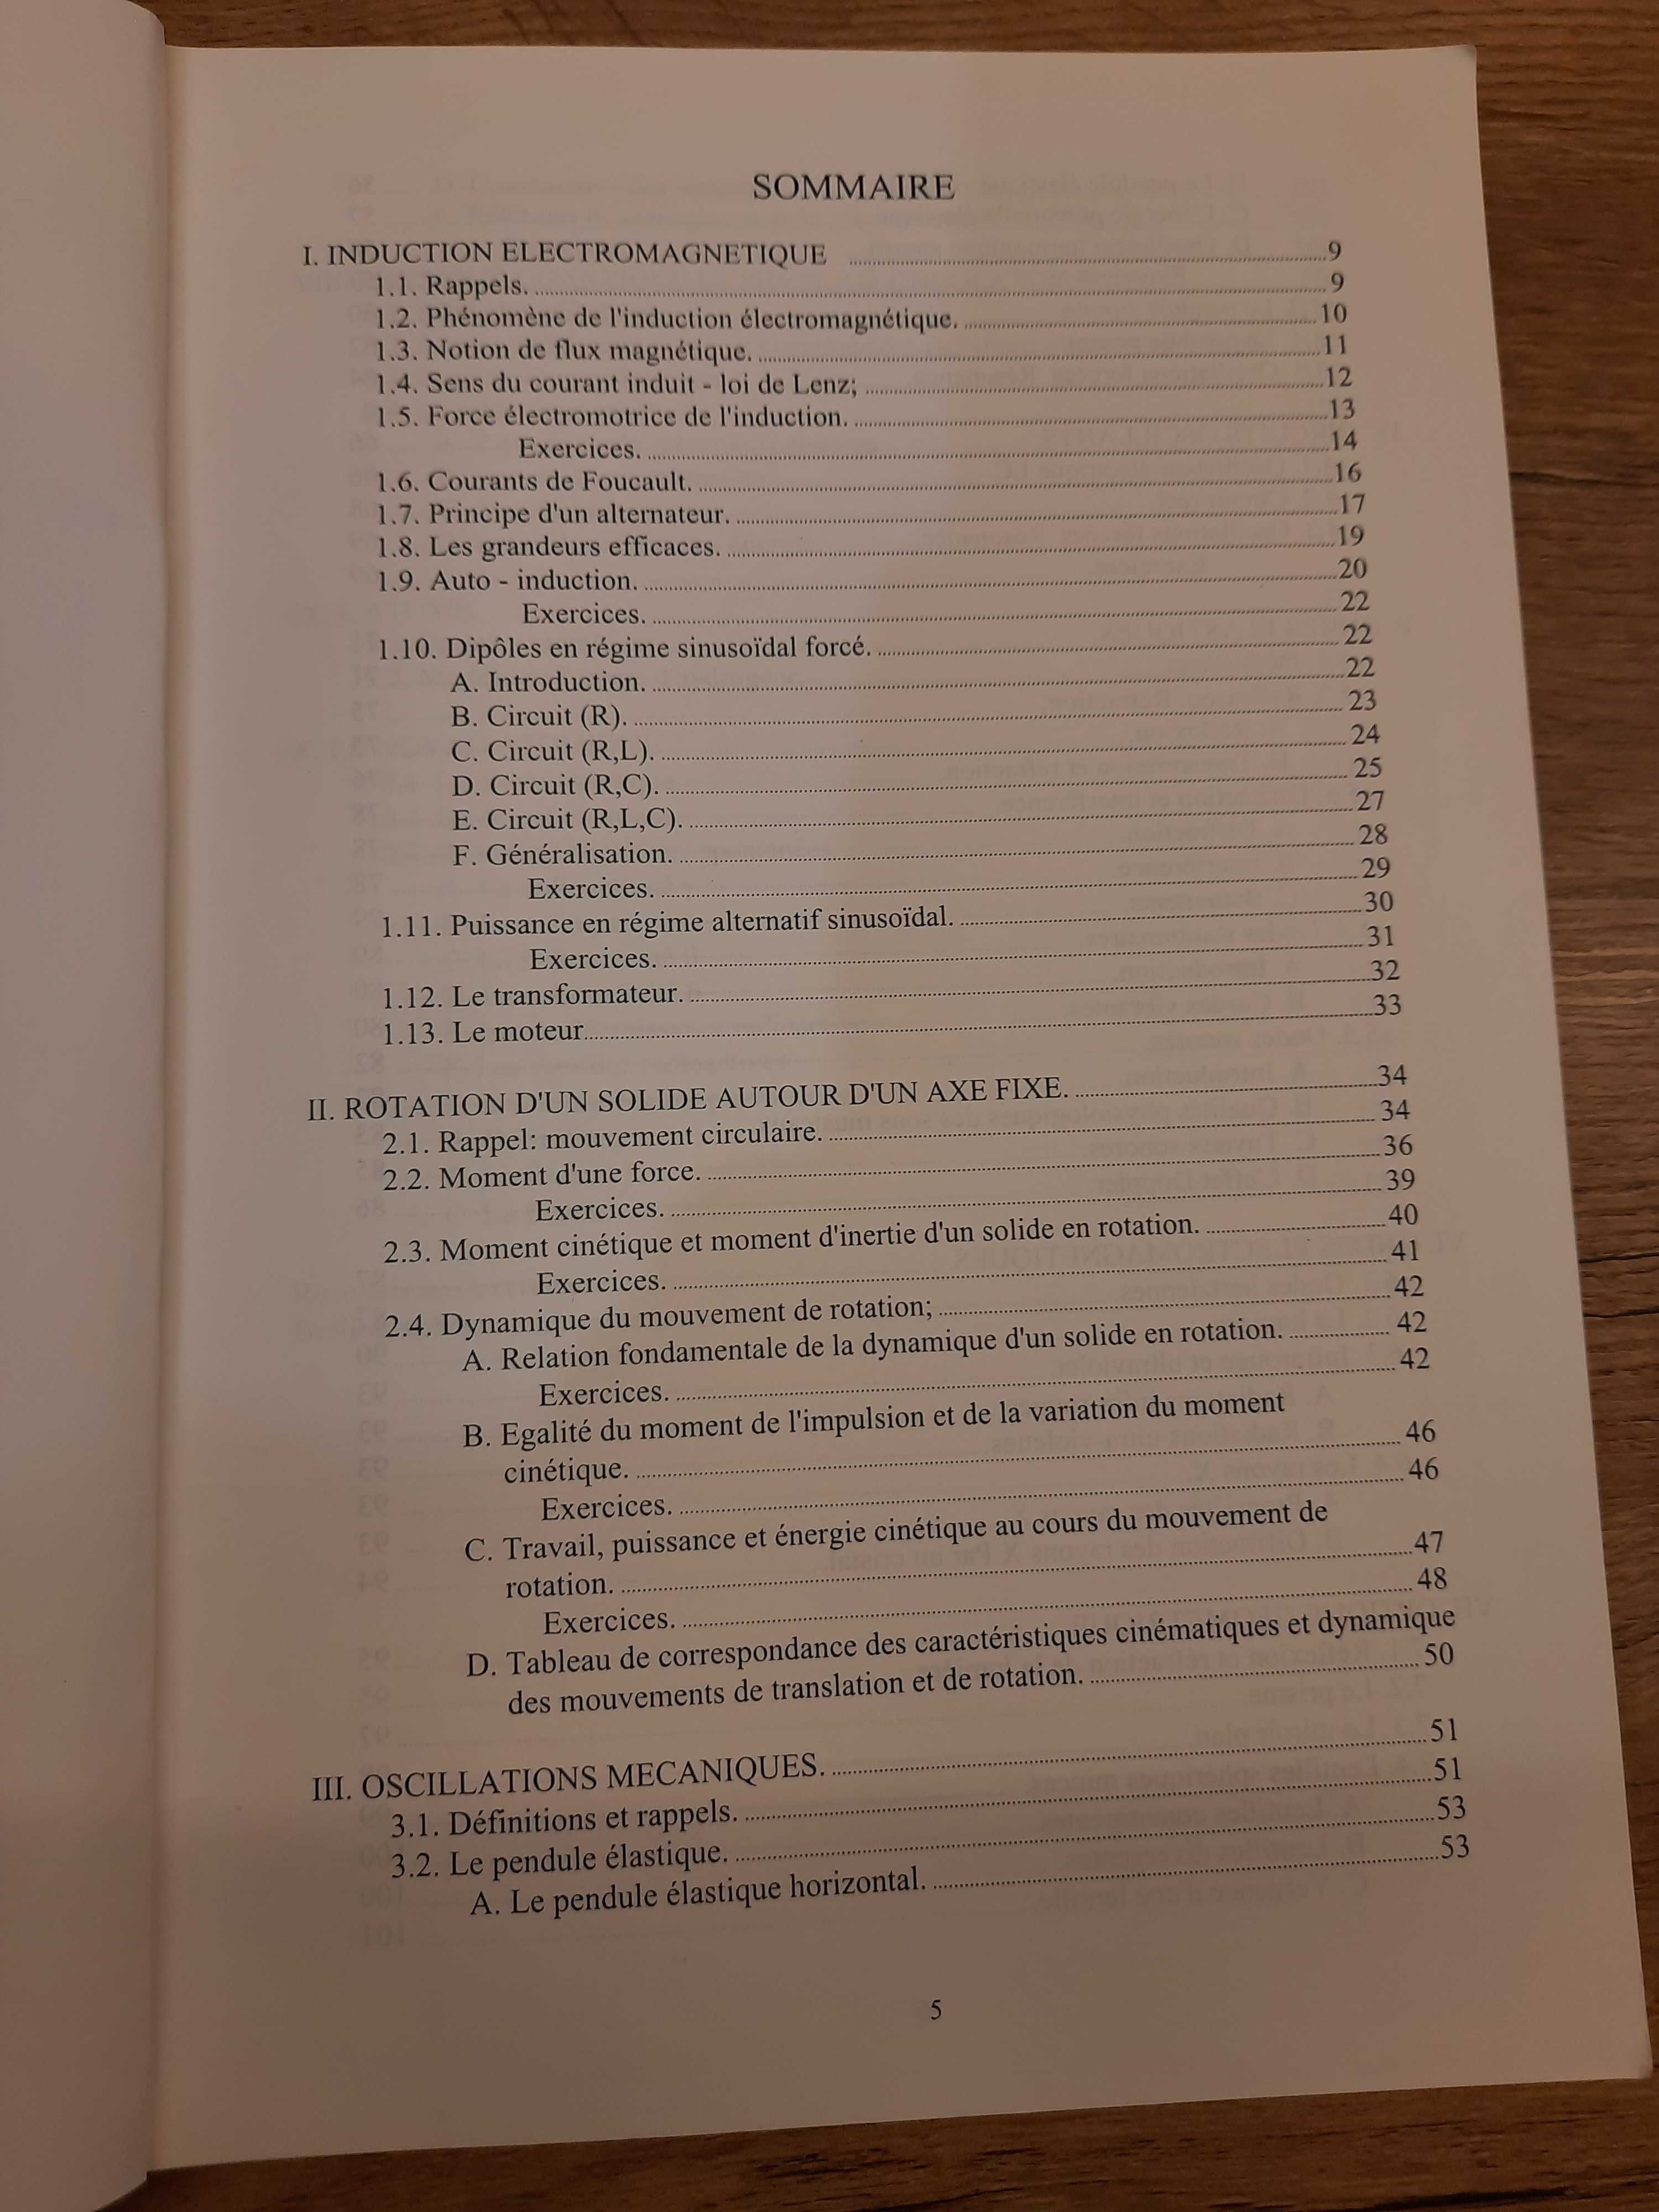 Podręcznik do fizyki w języku francuskim (poziom liceum)